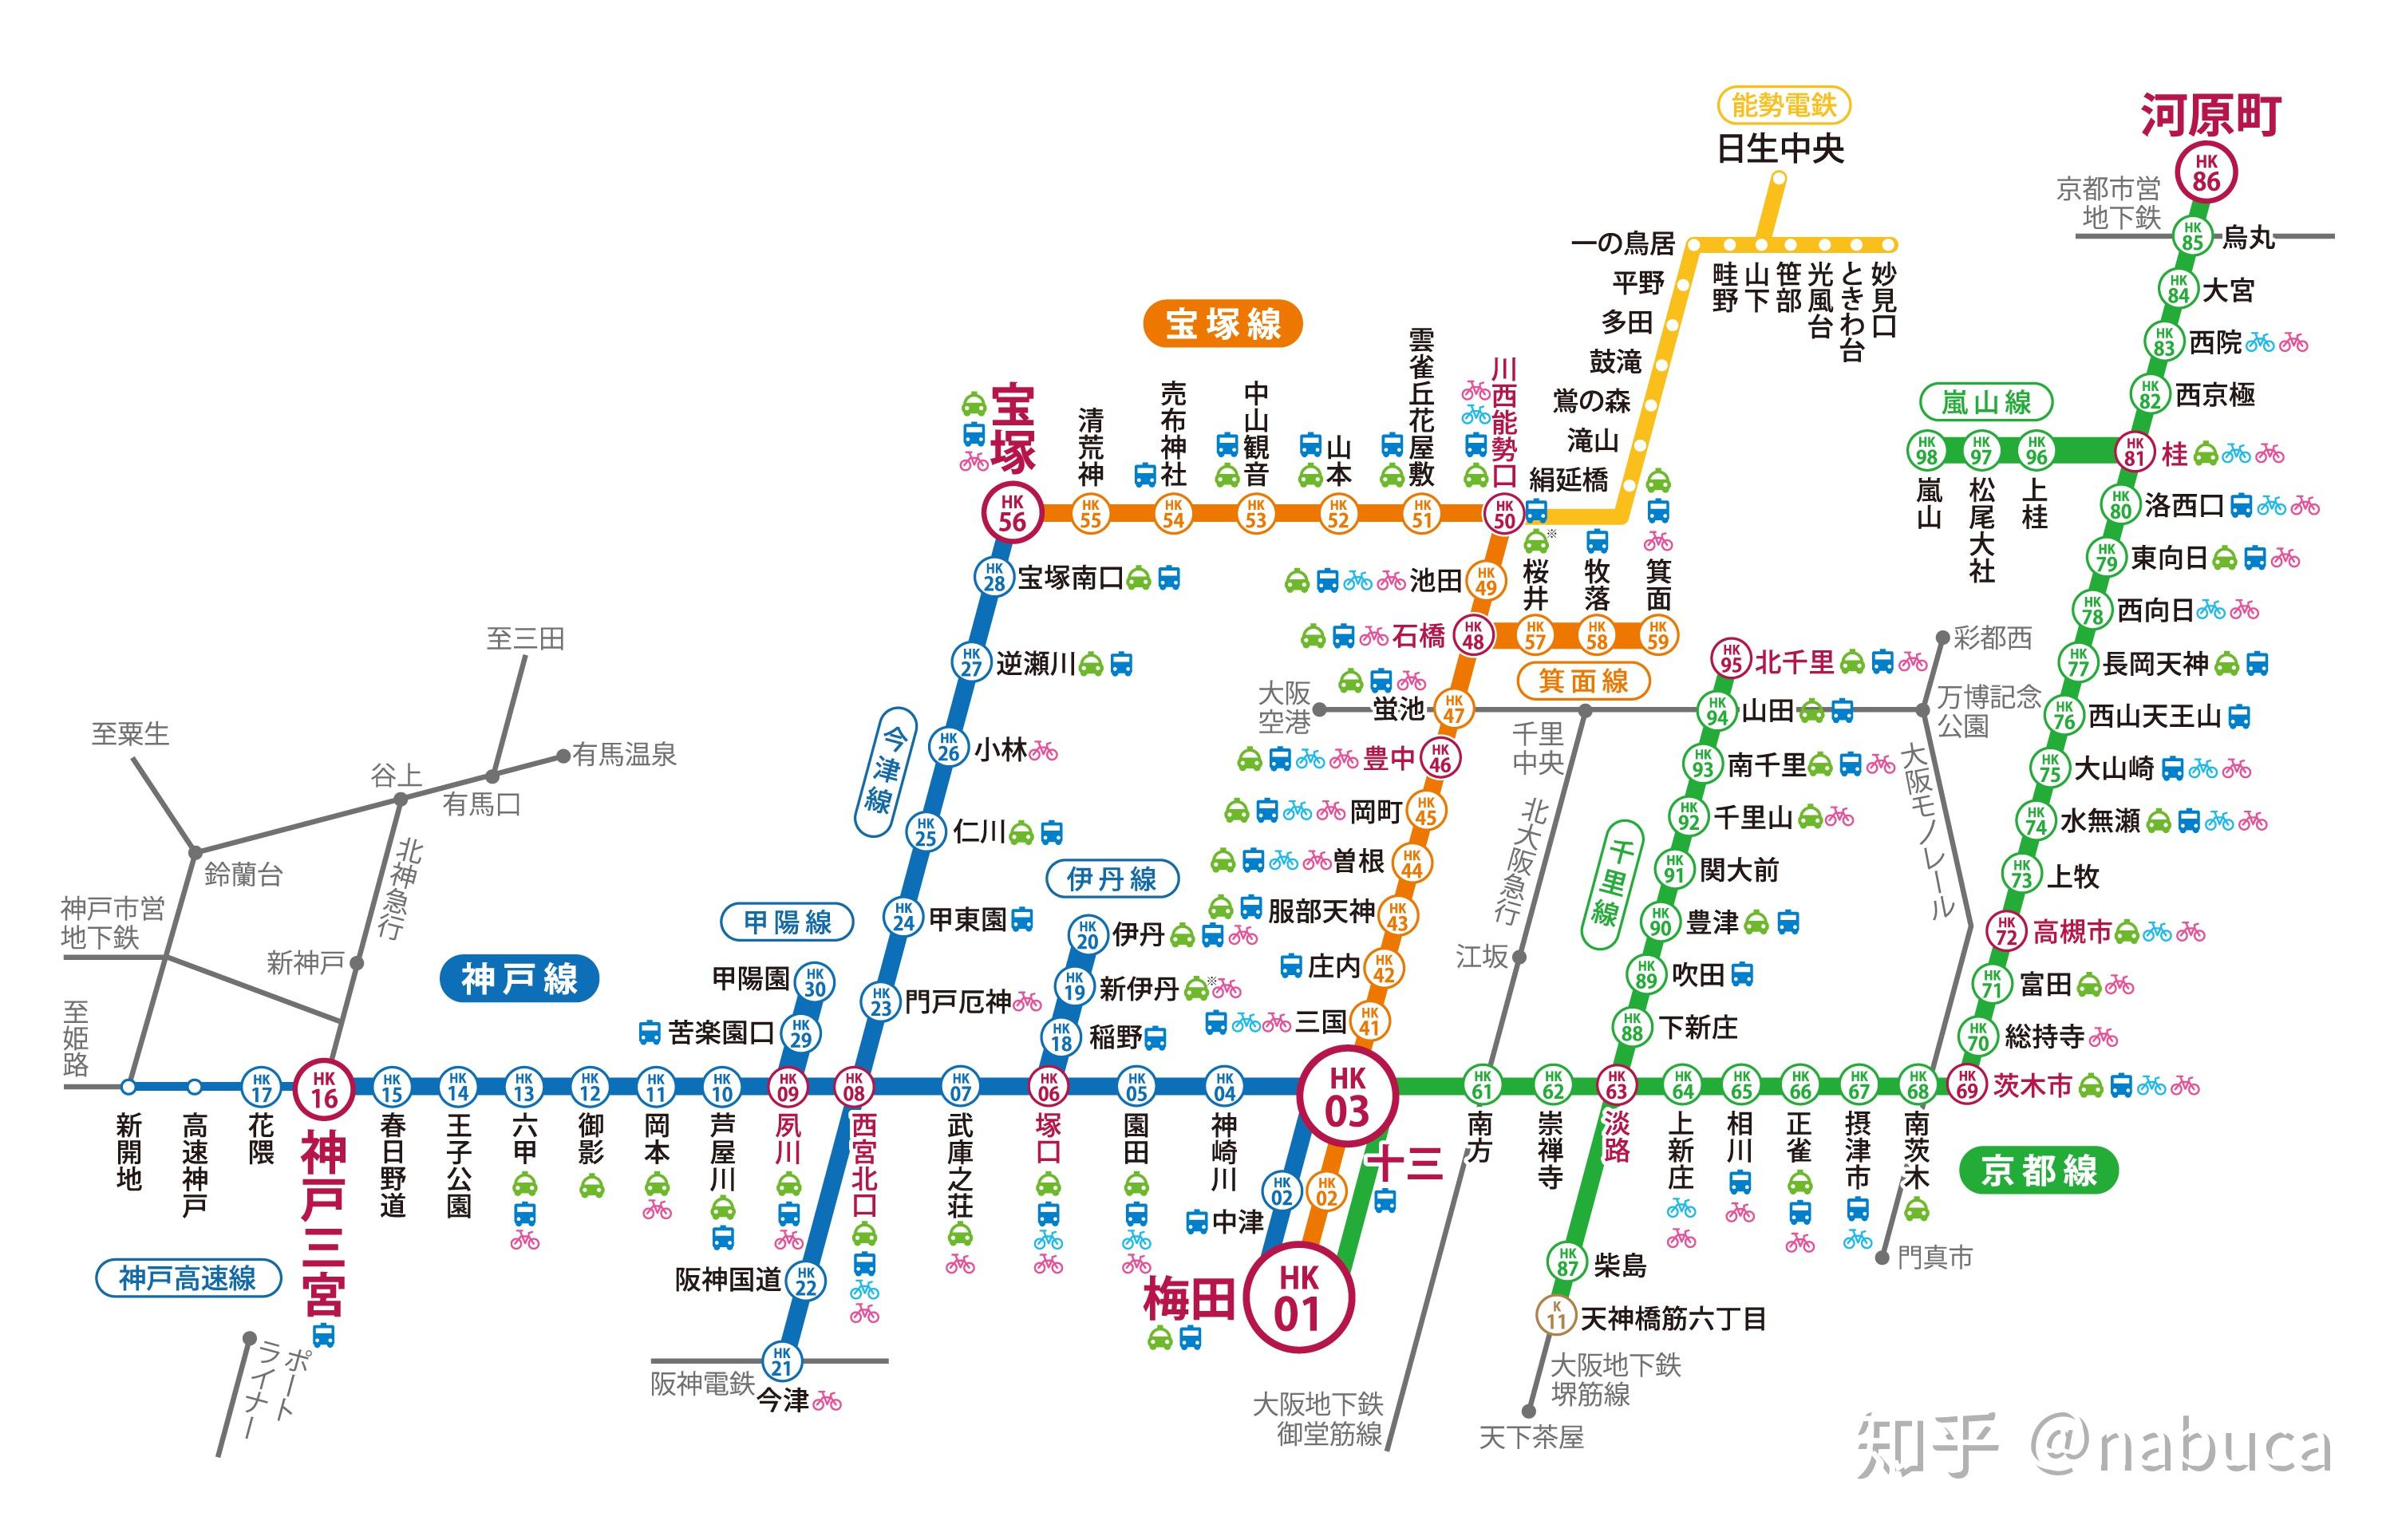 阪急电车的各条线路连接起京阪神三地,是关西地区比较重要的私营铁路